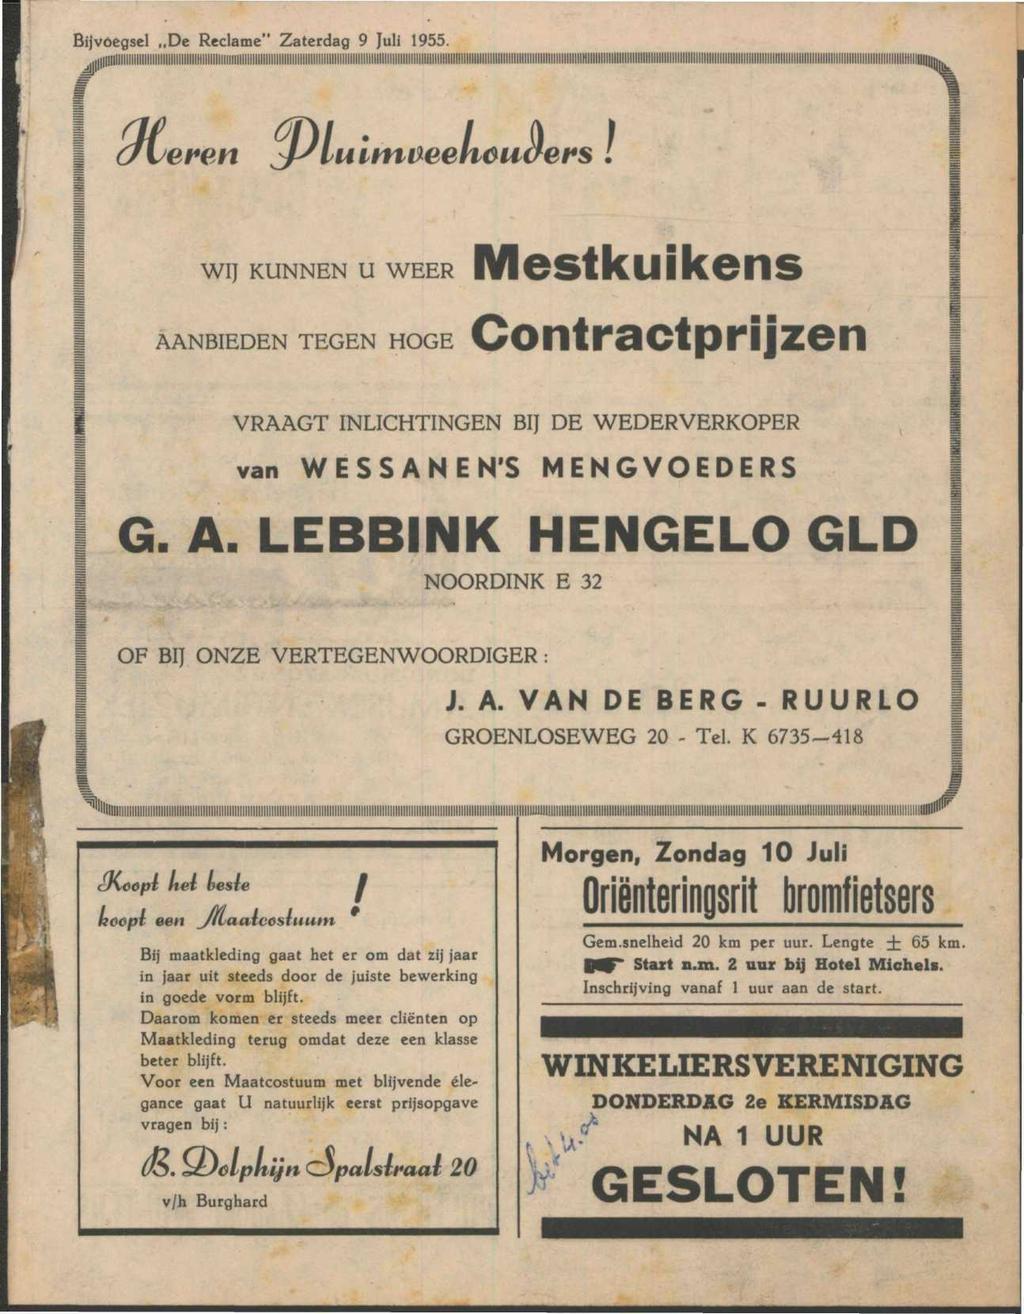 Bijvoegsel De Reclame" Zaterdag 9 Juli 1955. (/v WIJ KUNNEN U WEER AANBIEDEN TEGEN HOGE Mestkuikens Contractprijzen VRAAGT INLICHTINGEN BIJ DE WEDERVERKOPER van WESSANEN'S MENGVOEDERS G. A. LEBBINK HENGELO GLD NOORDINK E 32 OF BIJ ONZE VERTEGENWOORDIGER: J.